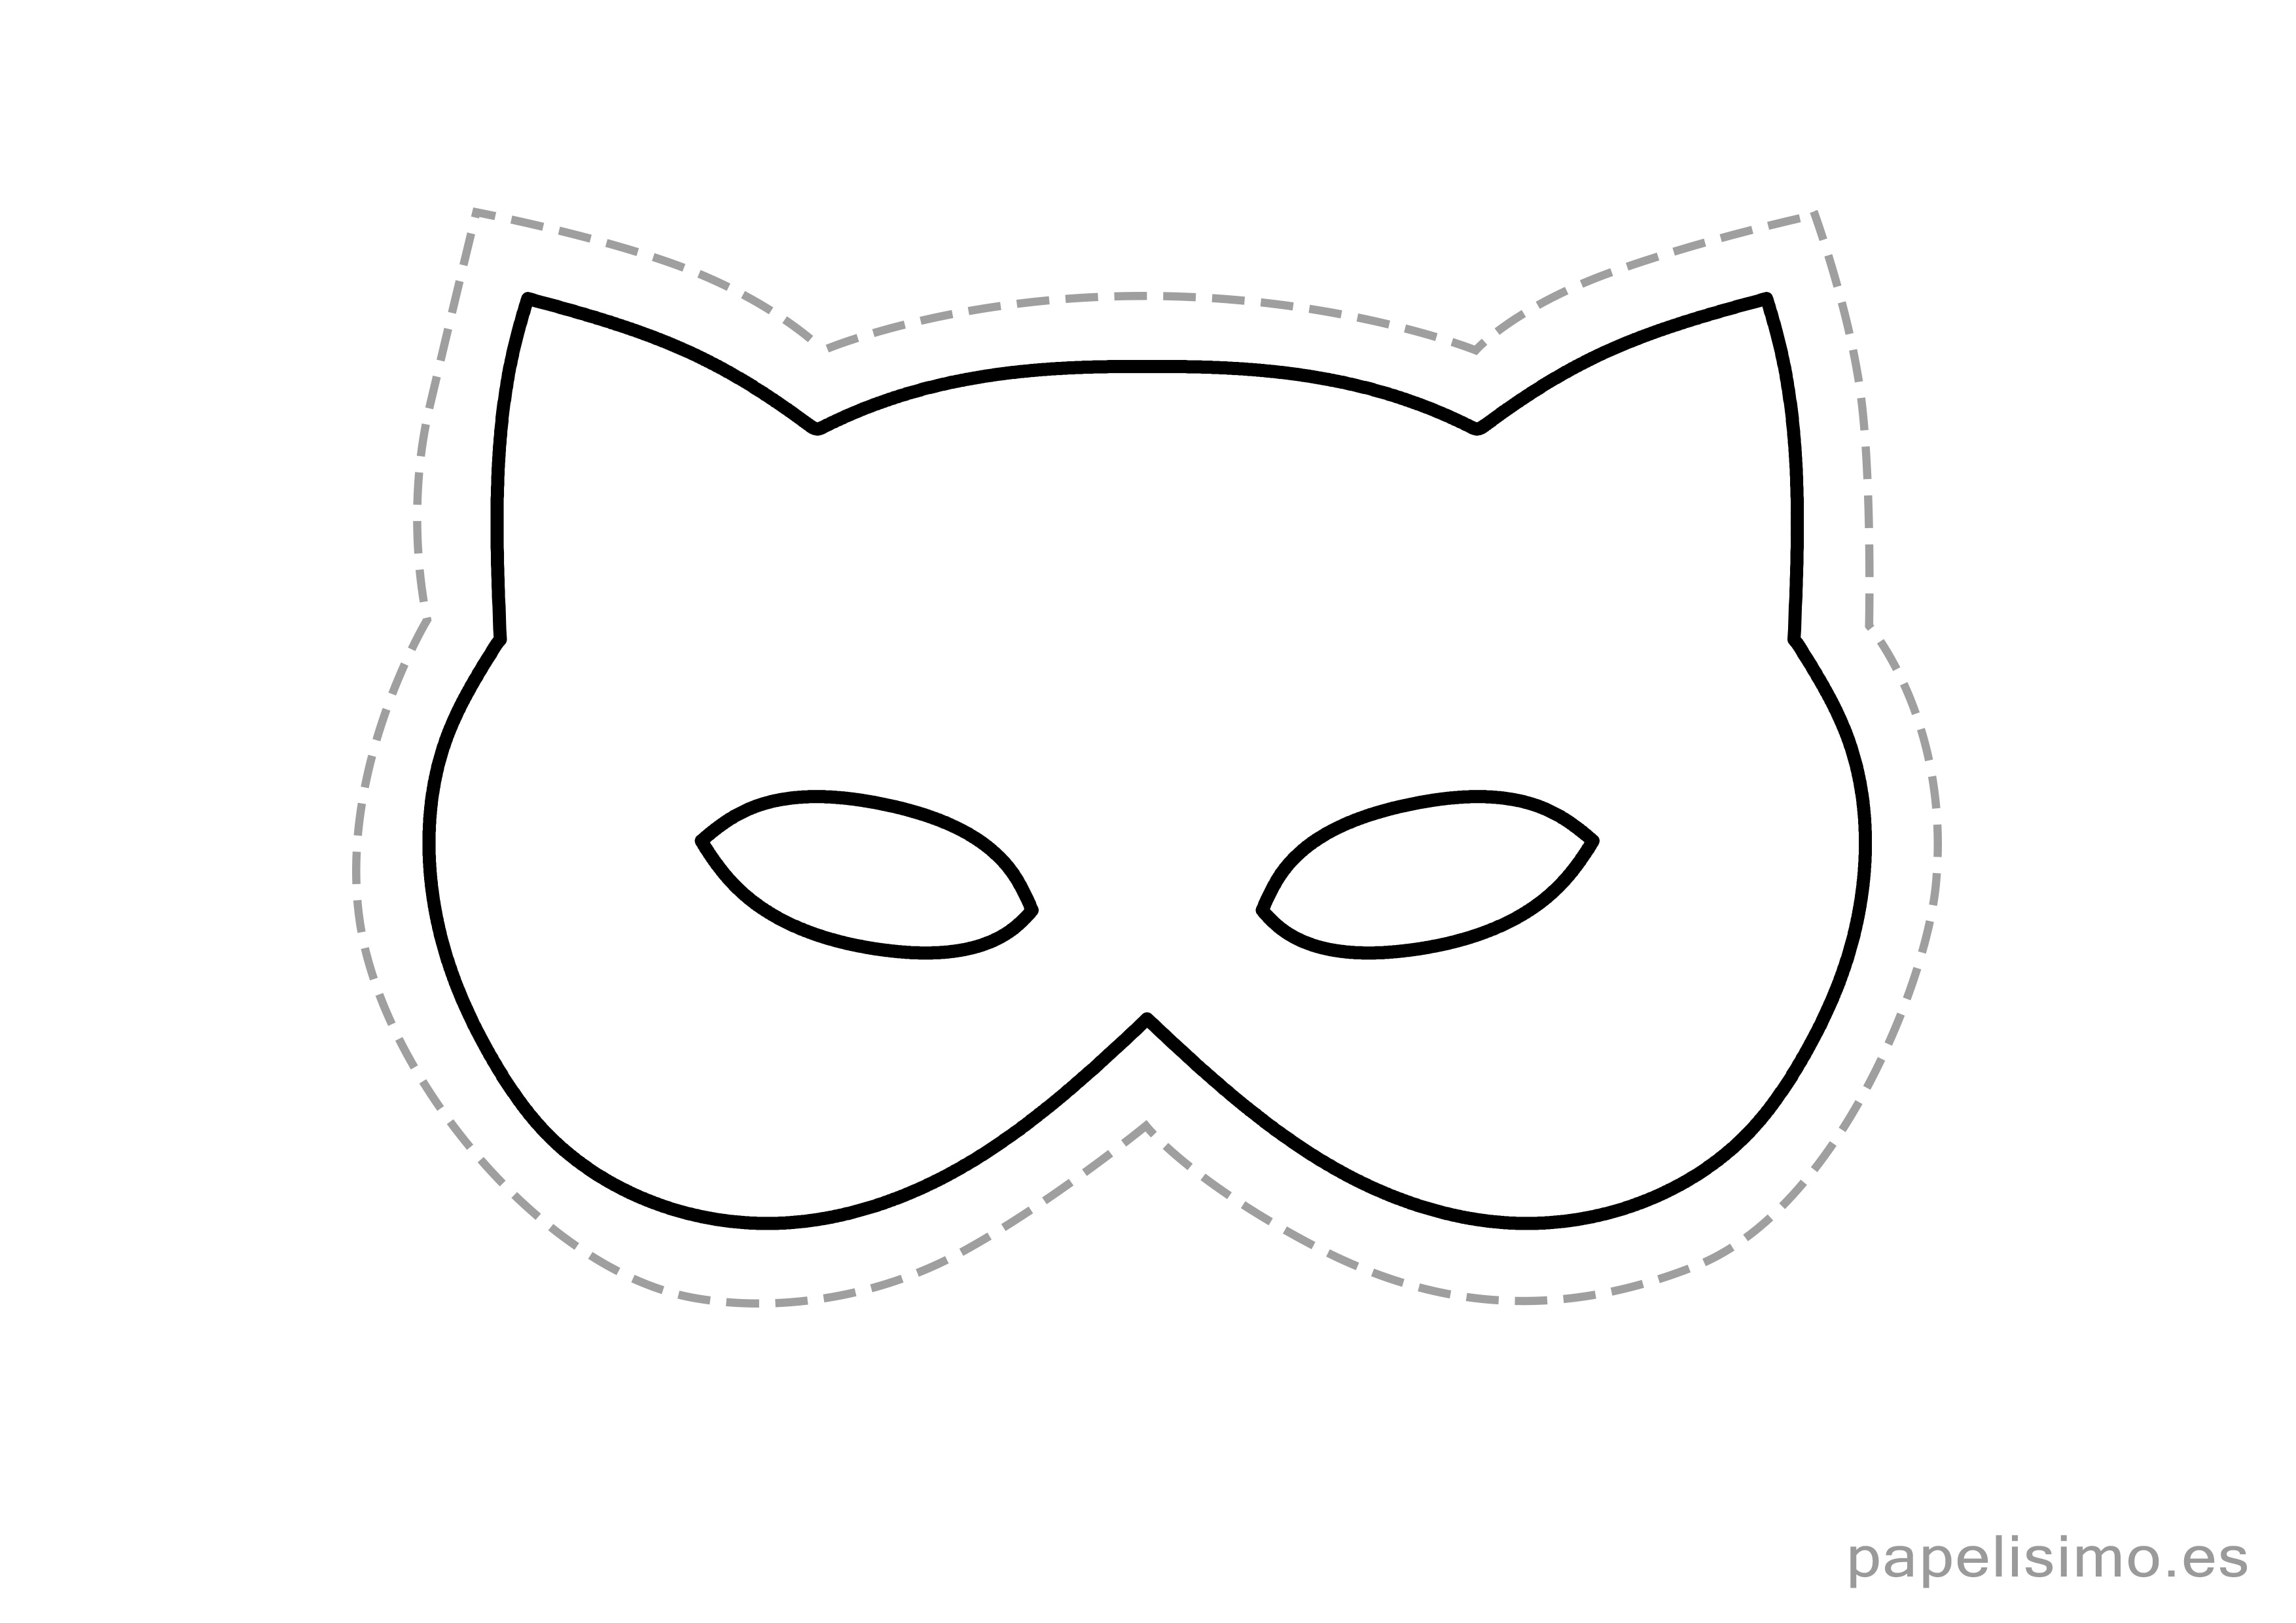 chasquido bahía Cuatro 9 máscaras de goma eva para imprimir y recortar | Papelisimo